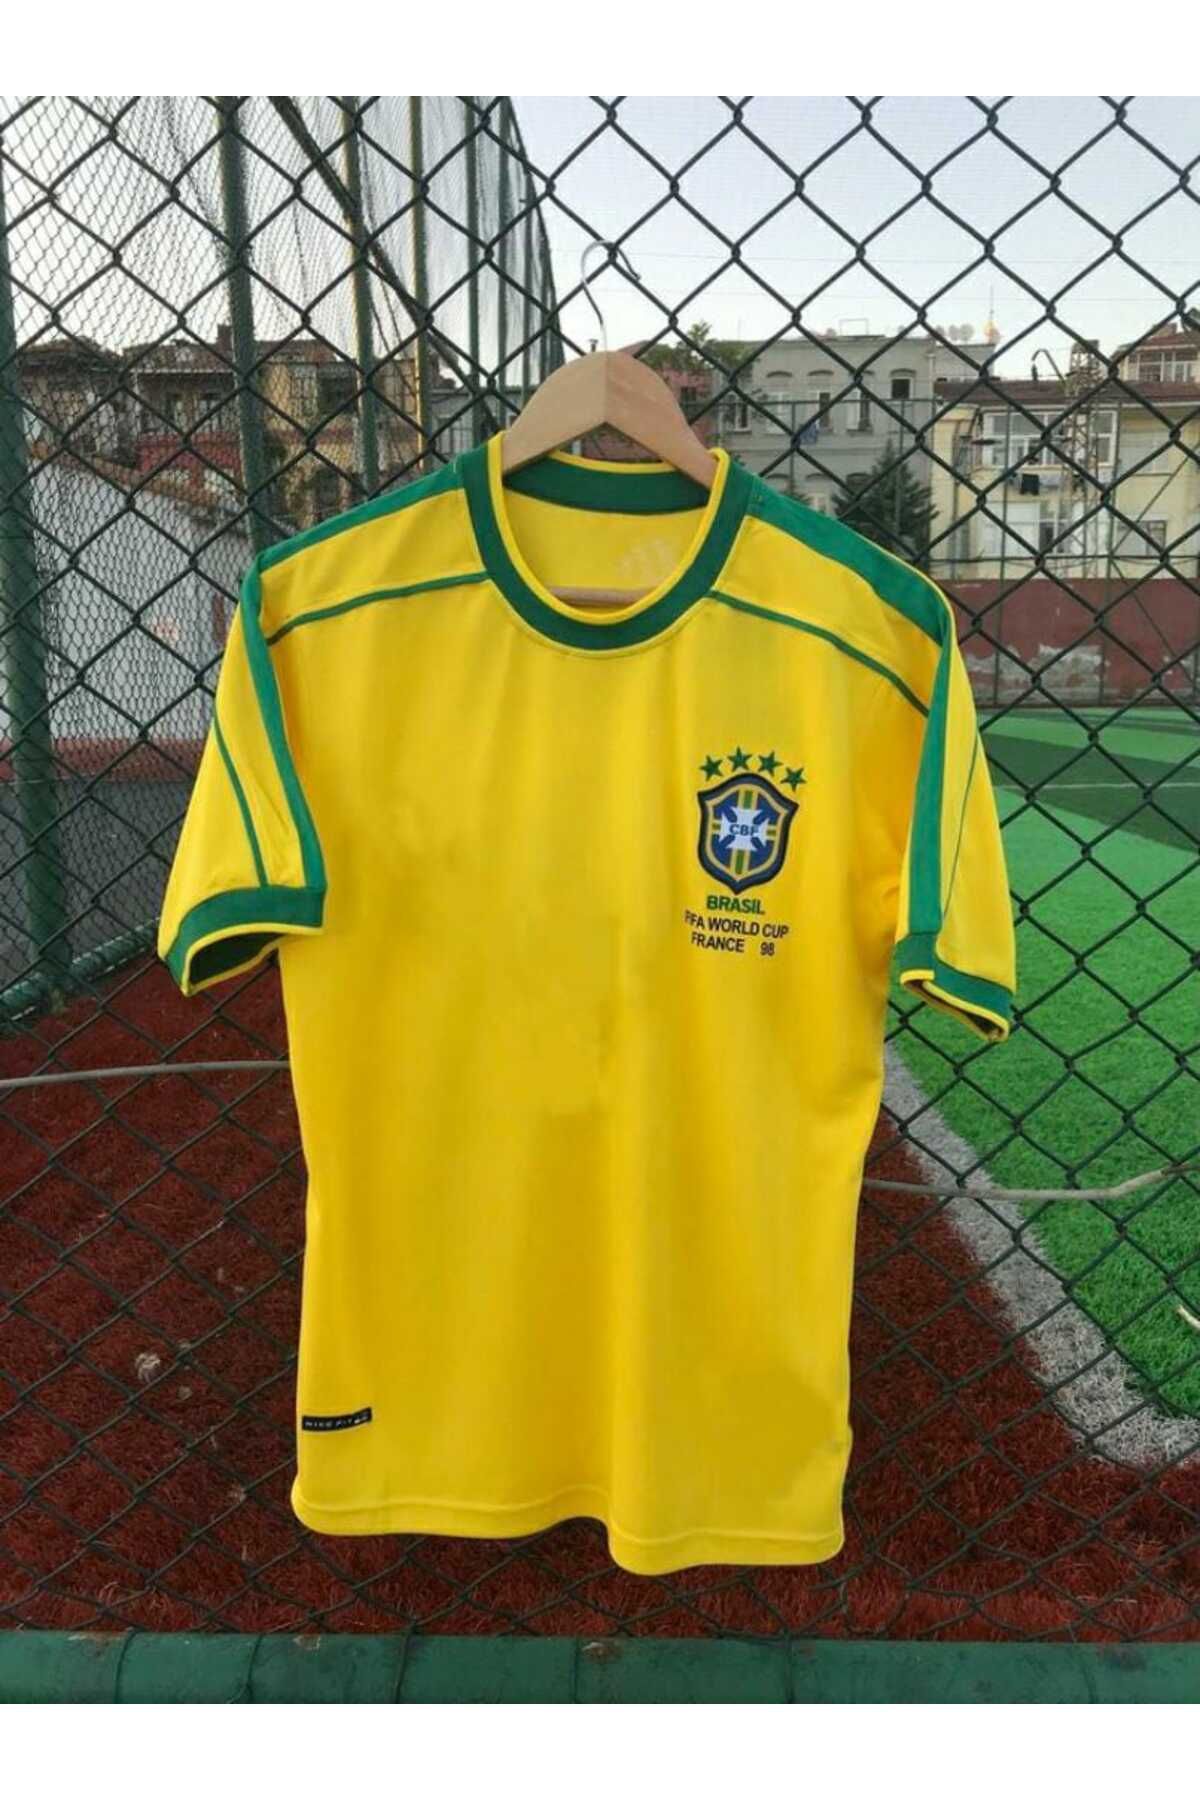 BYSPORTAKUS Brezilya Milli Takımı 98 Dünya Kupası Ronaldo Nazario Nostalji Forması